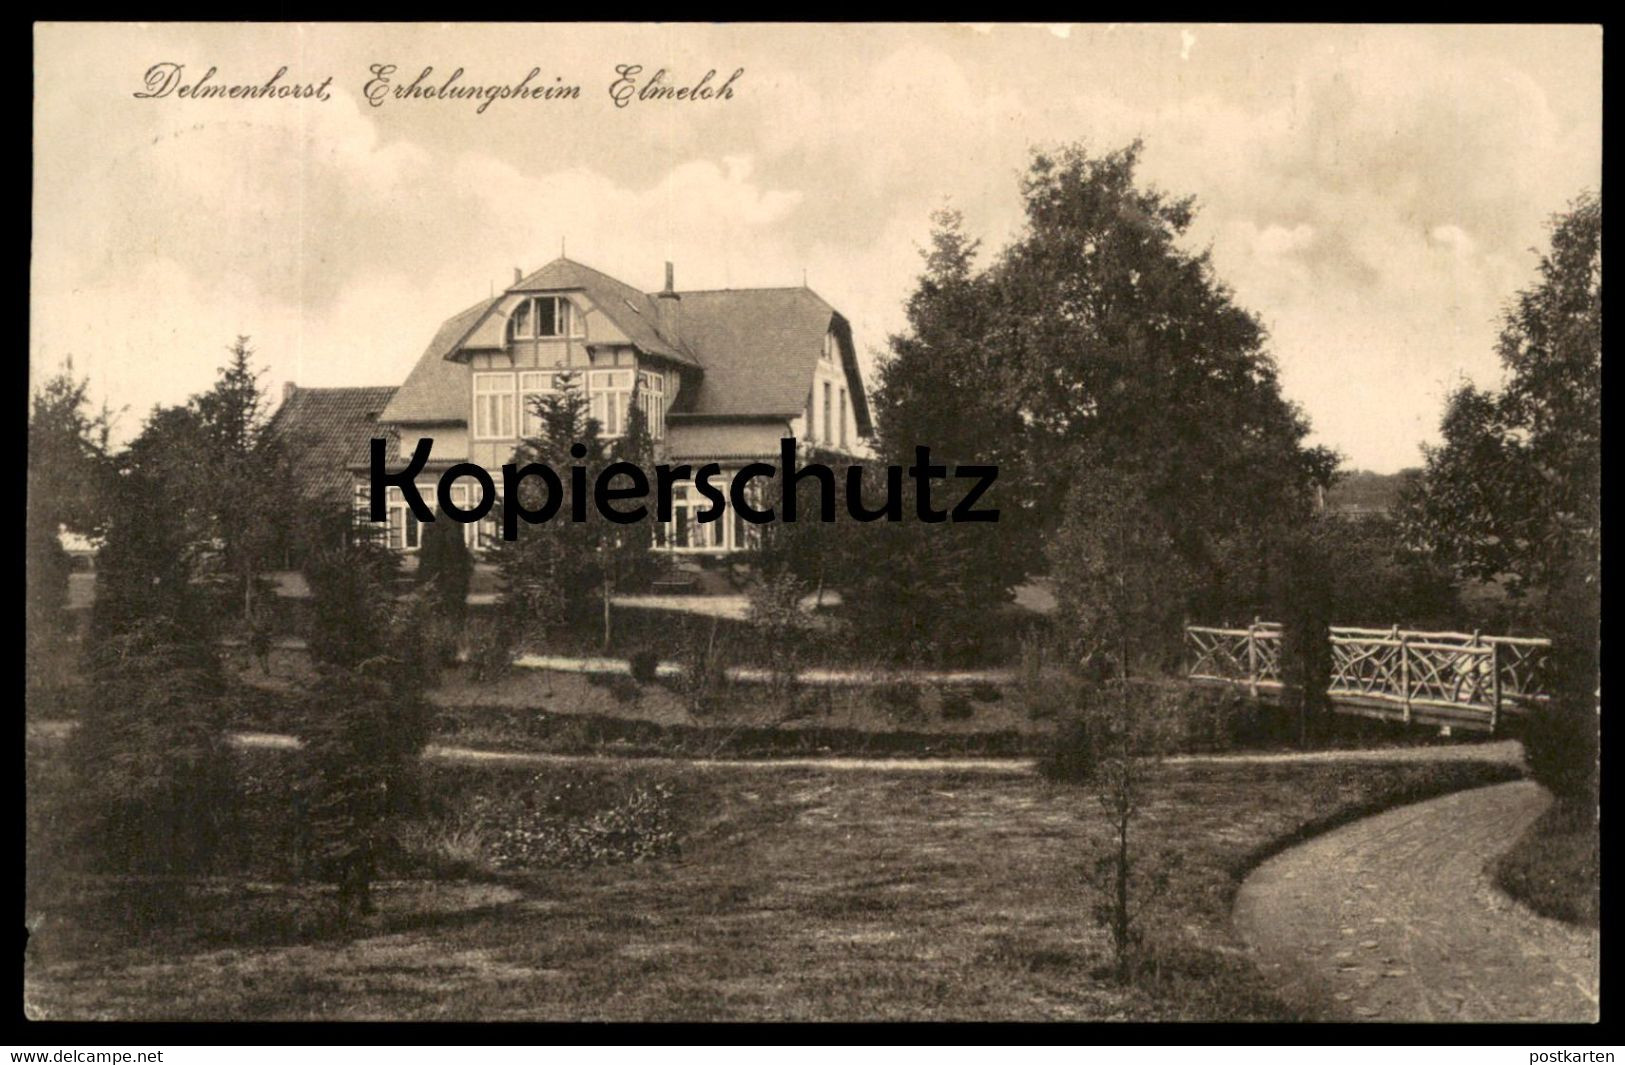 ALTE POSTKARTE DELMENHORST ERHOLUNGSHEIM ELMELOH Heim Ansichtskarte Cpa Postcard AK - Delmenhorst